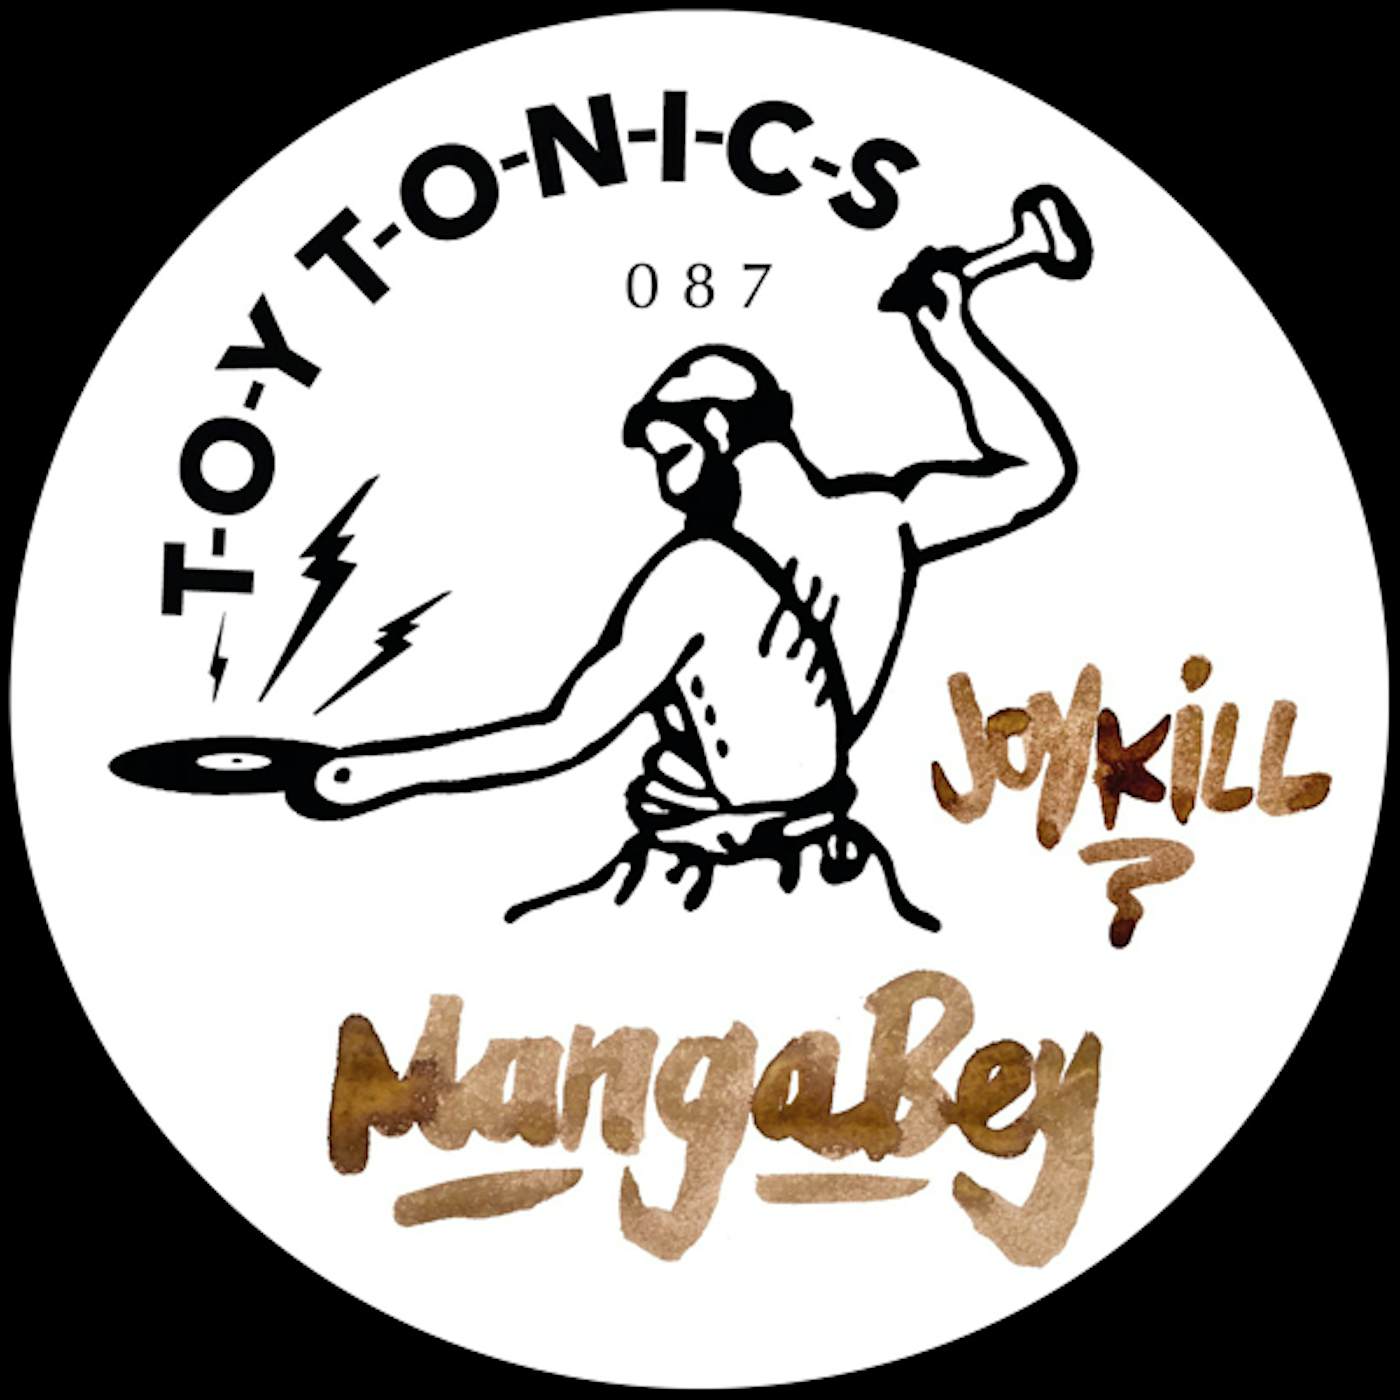 Mangabey Joy Kill Vinyl Record